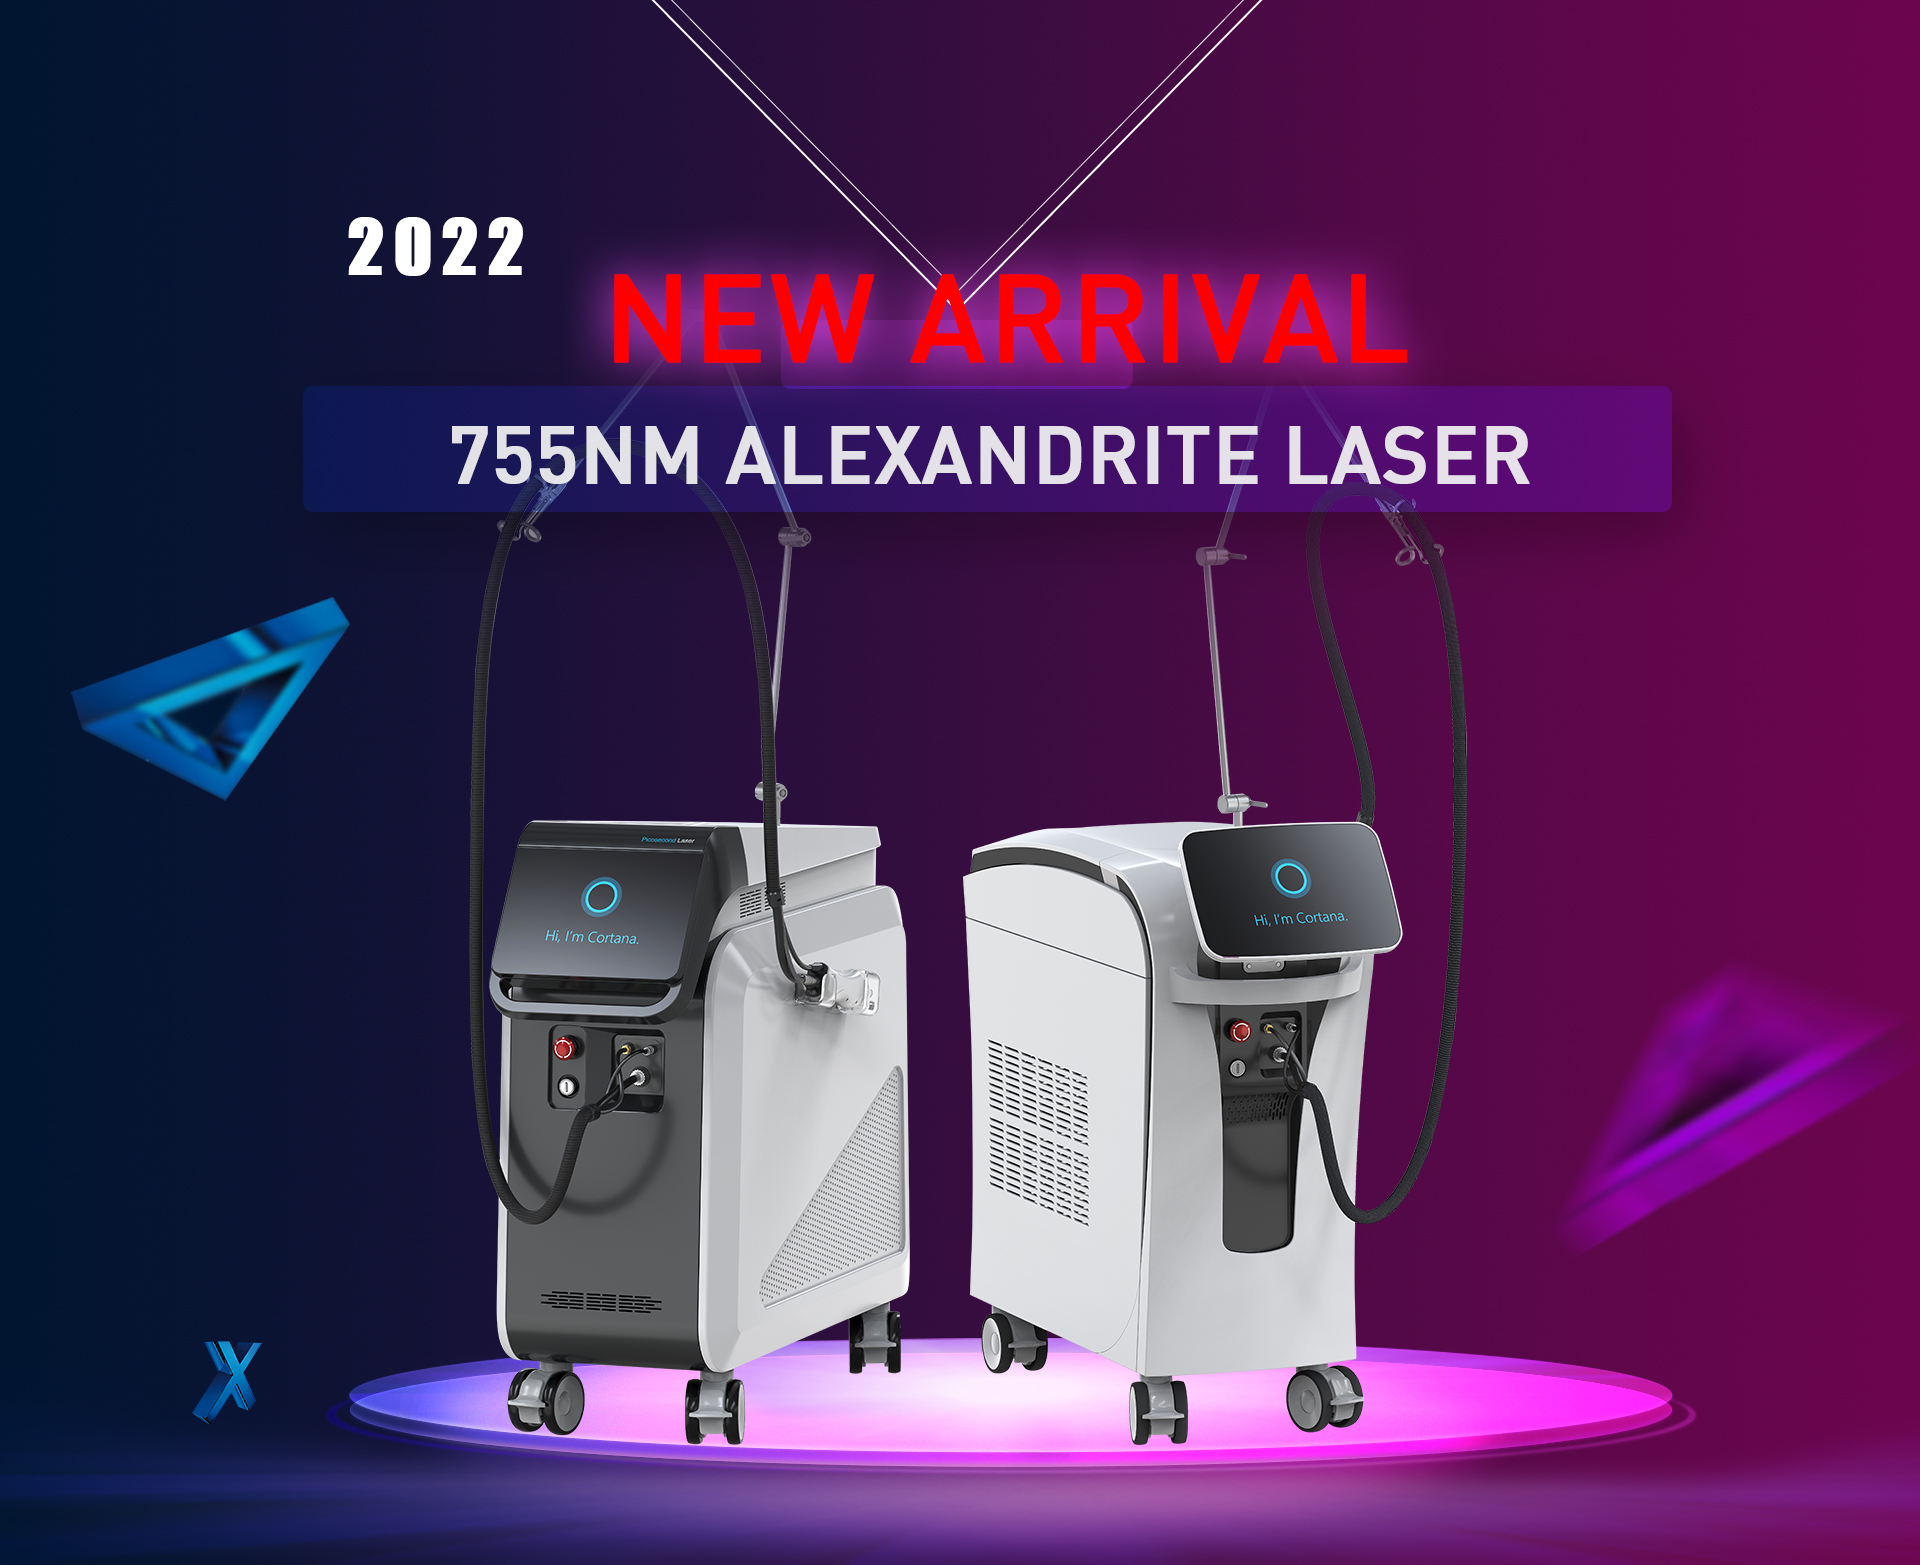 Dvije vrste nove 755nm aleksandritne laserske mašine puštene na tržište